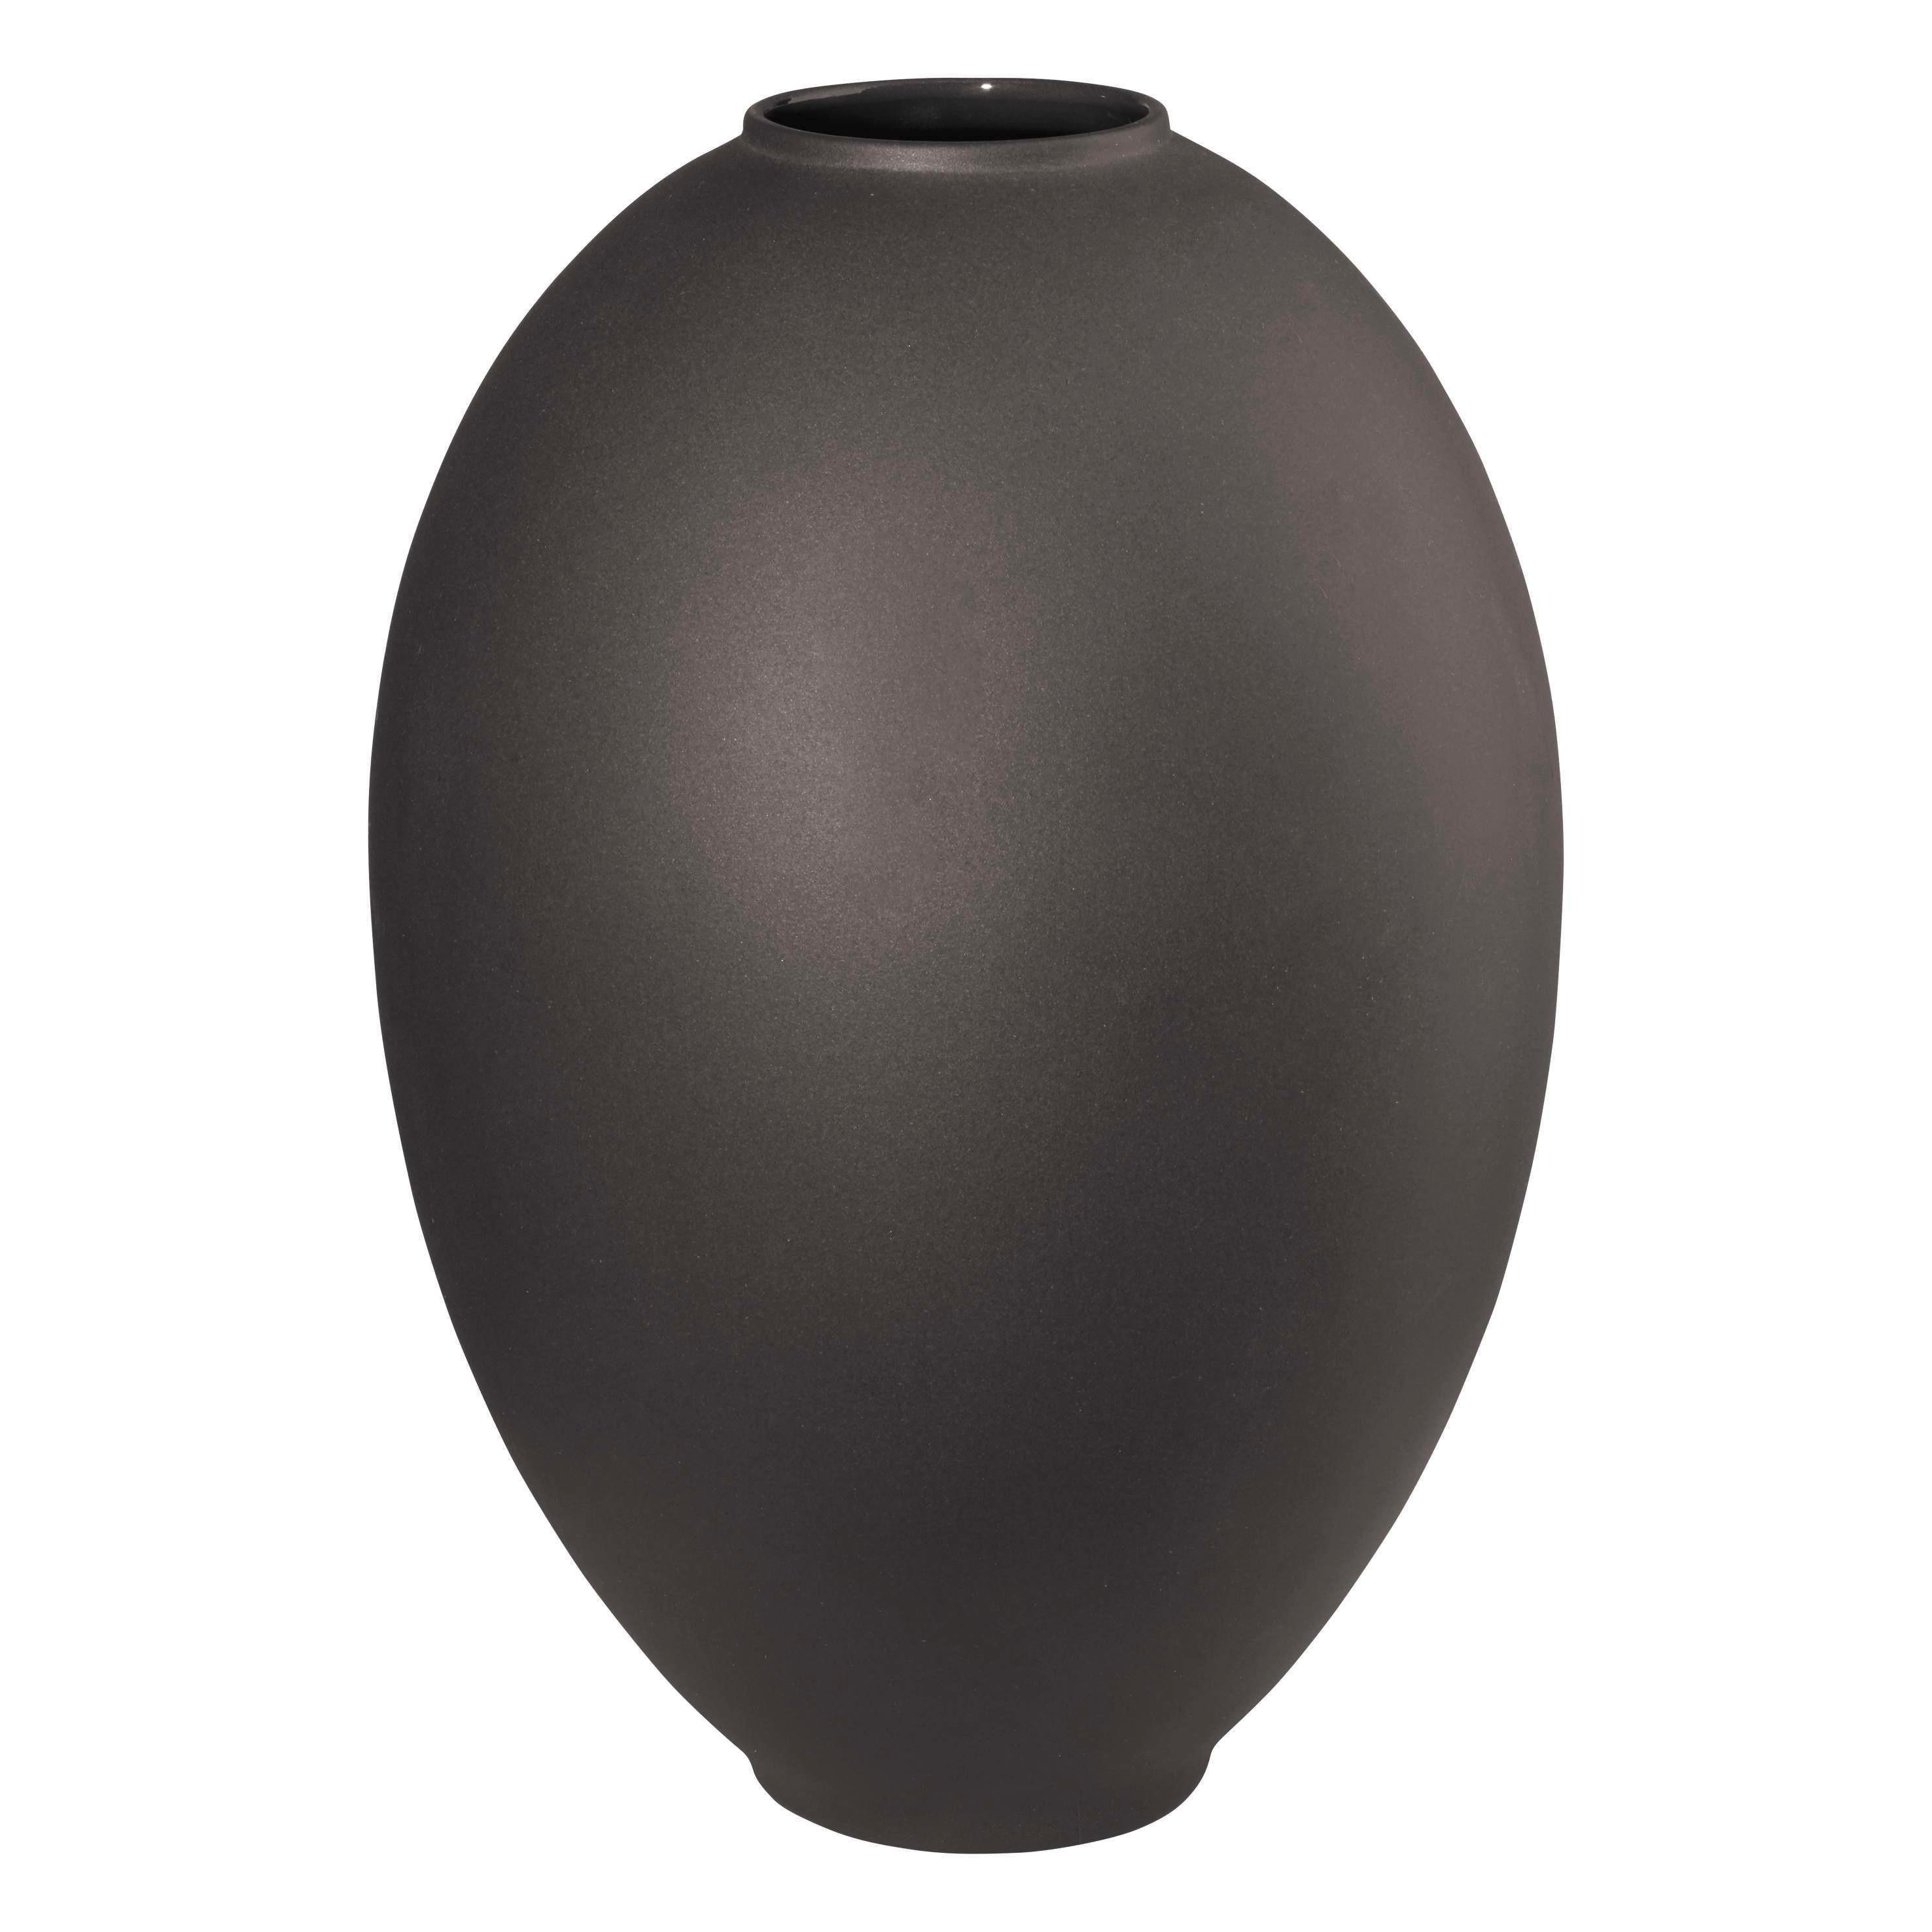 VÁZA, keramika, 25 cm - čierna, Basics, keramika (17/17/25cm) - ASA